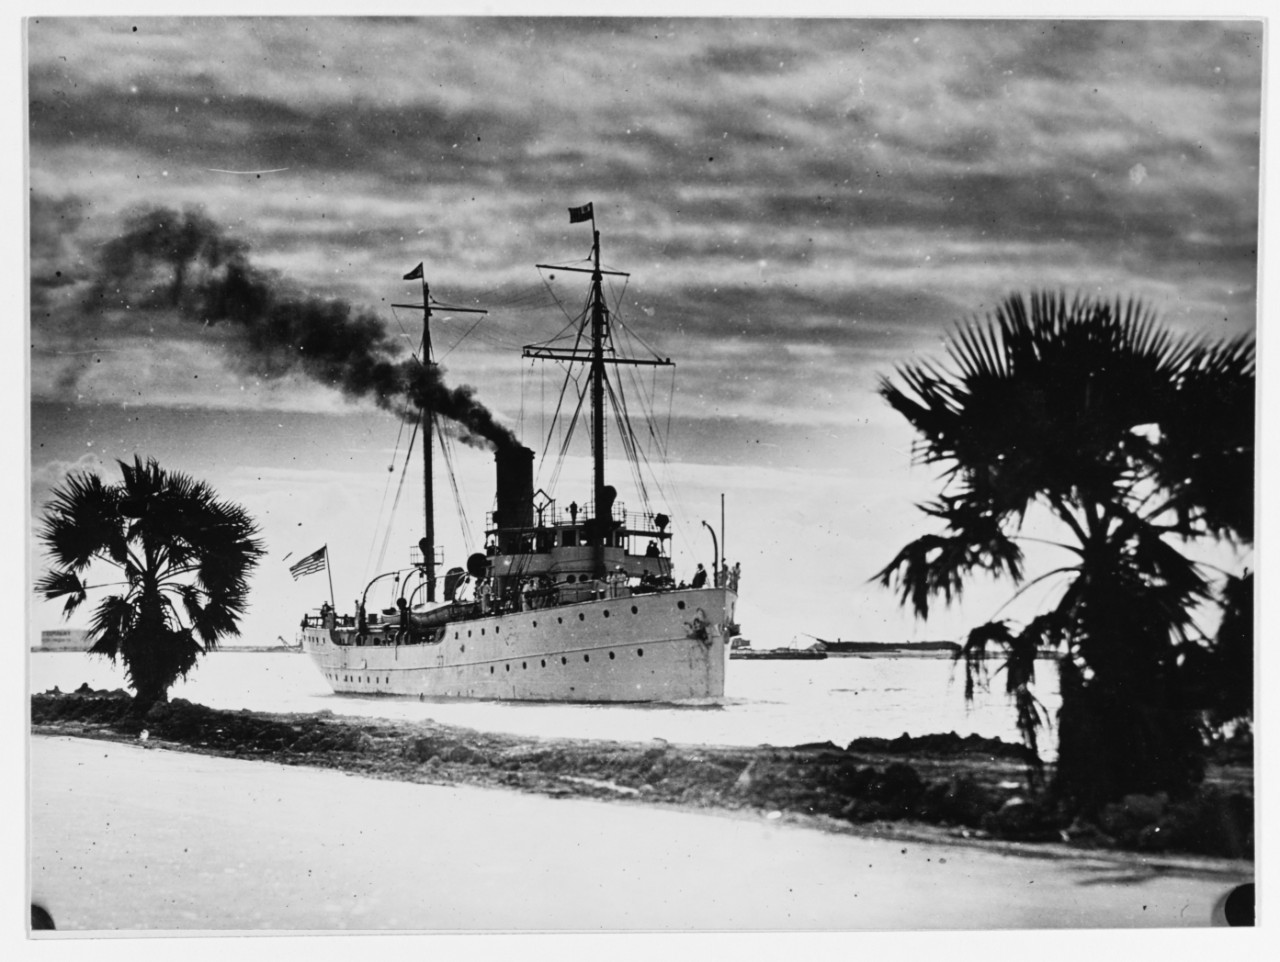 USCGC YAMACRAW